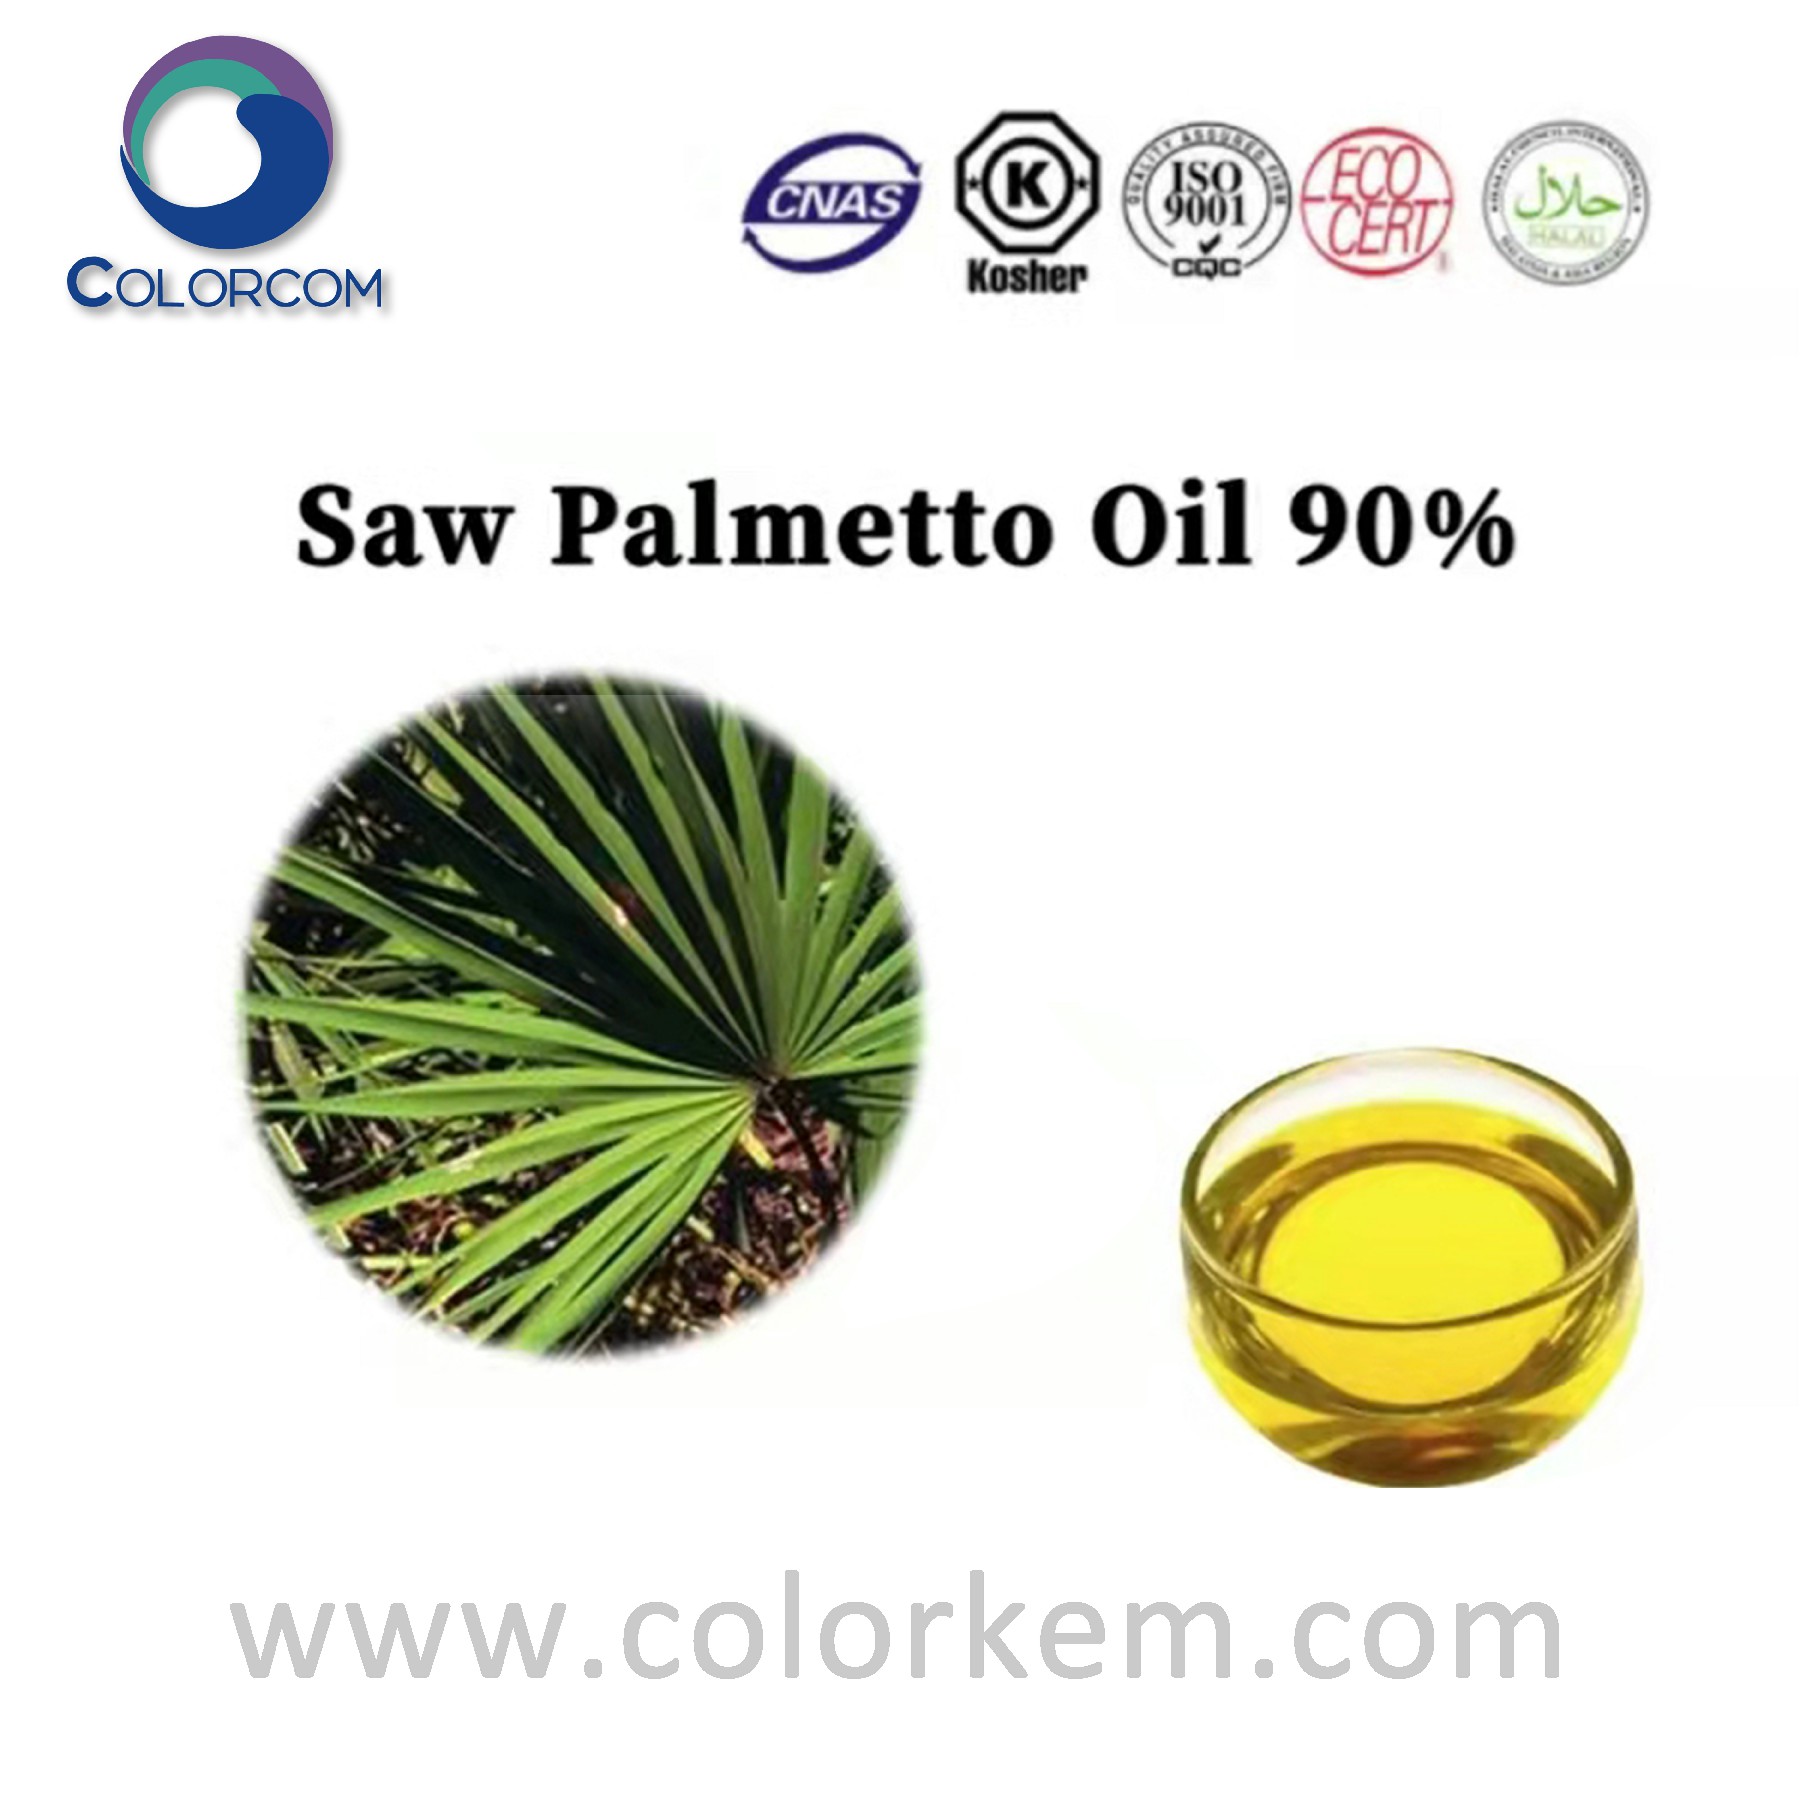 Saw palmetto oil 90